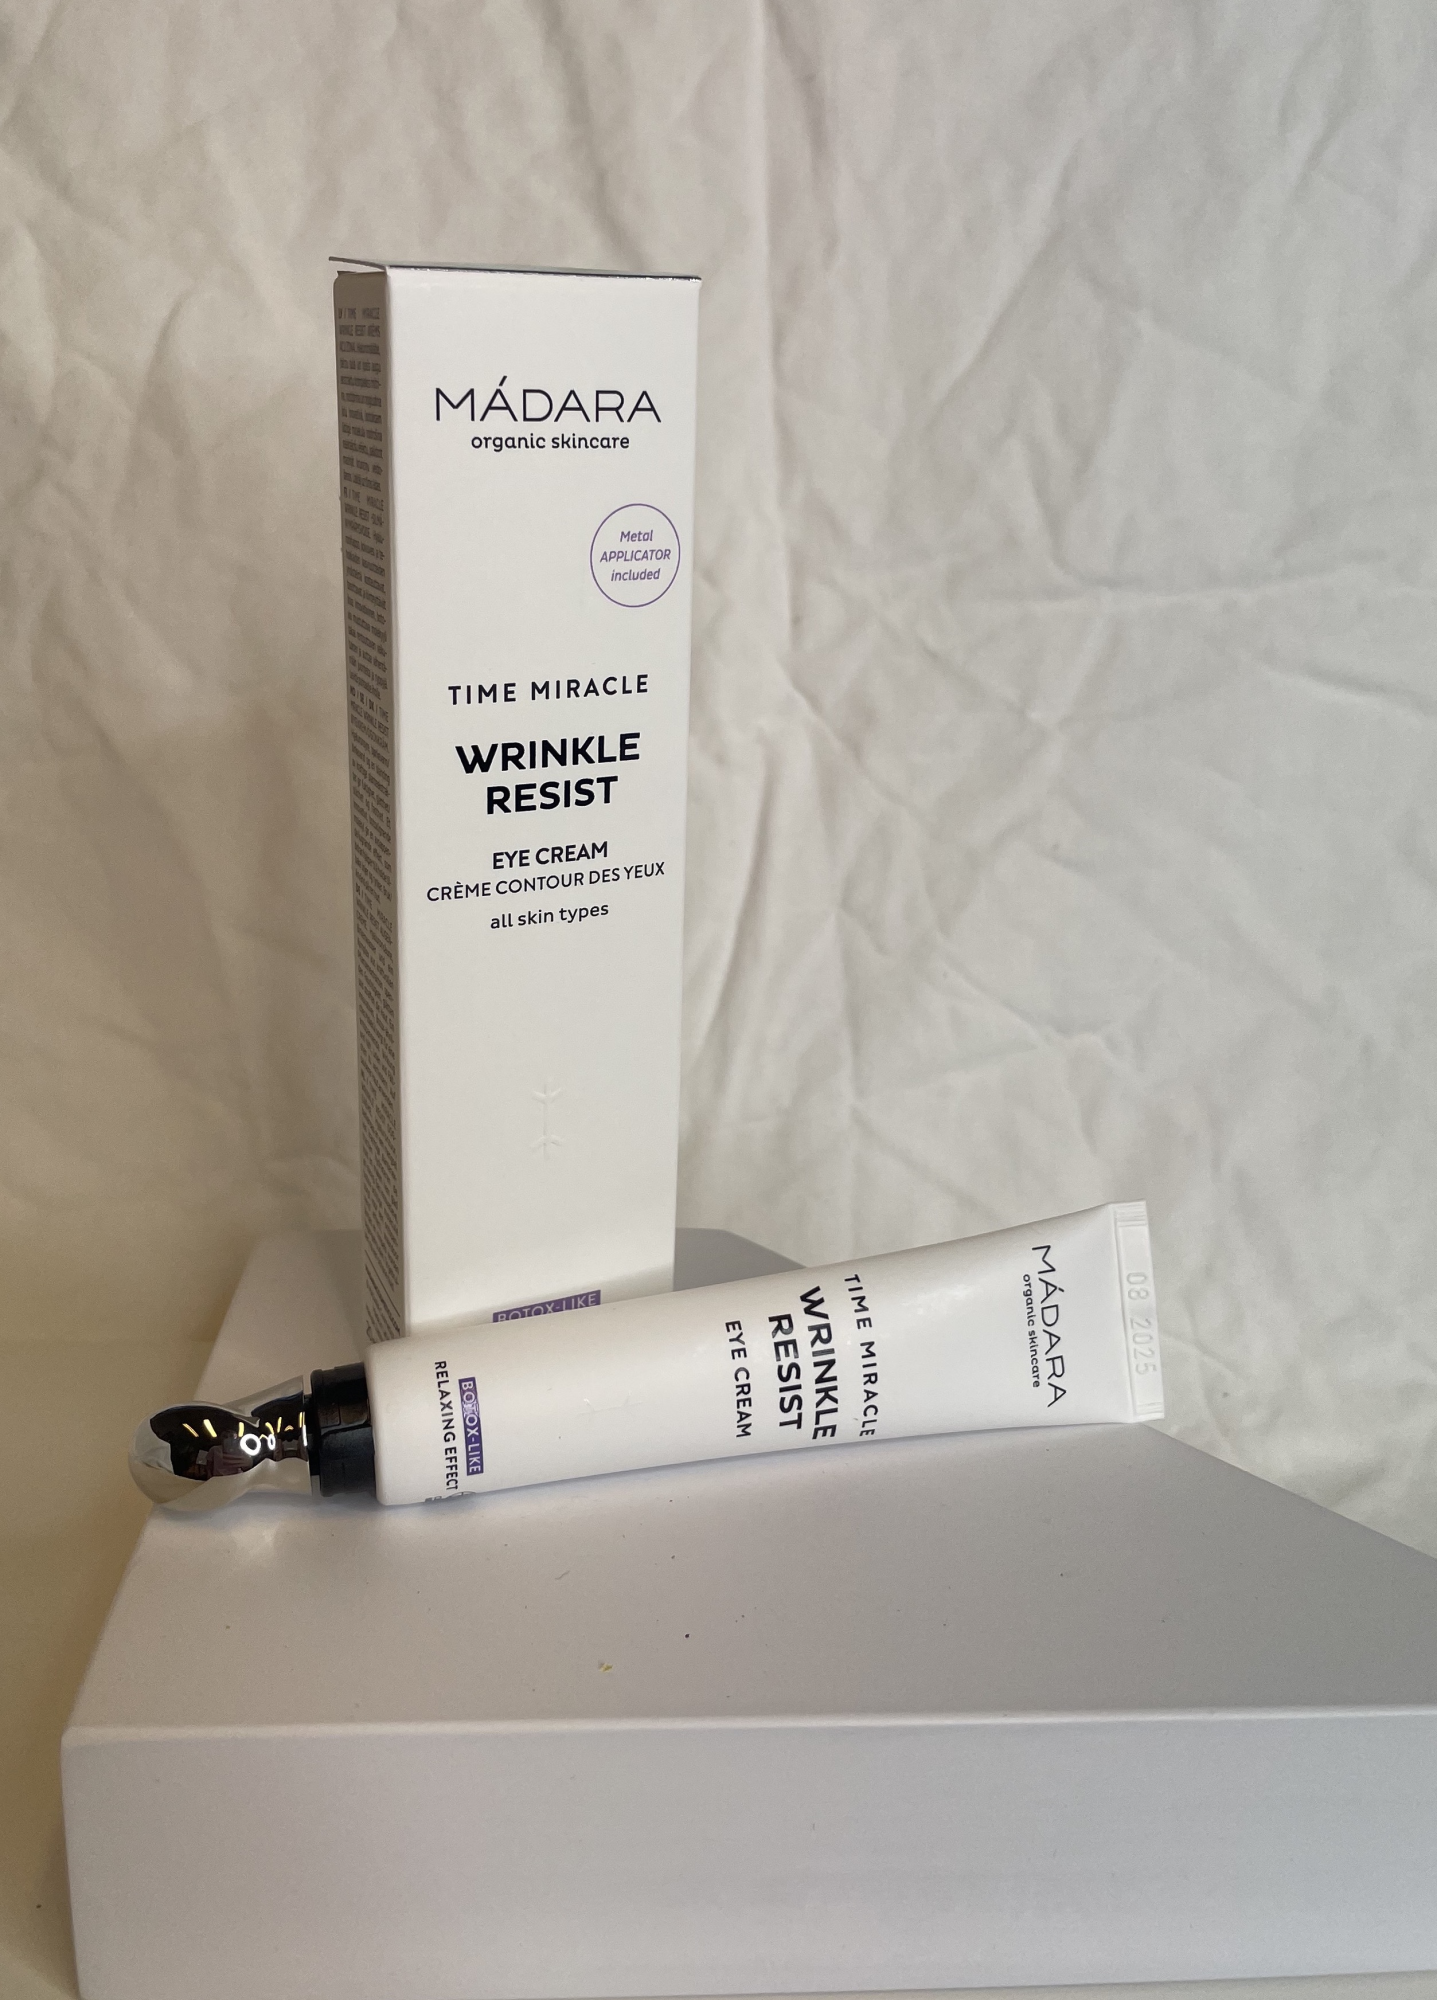 MADARA TIME MIRACLE Wrinkle Resist Eye Cream